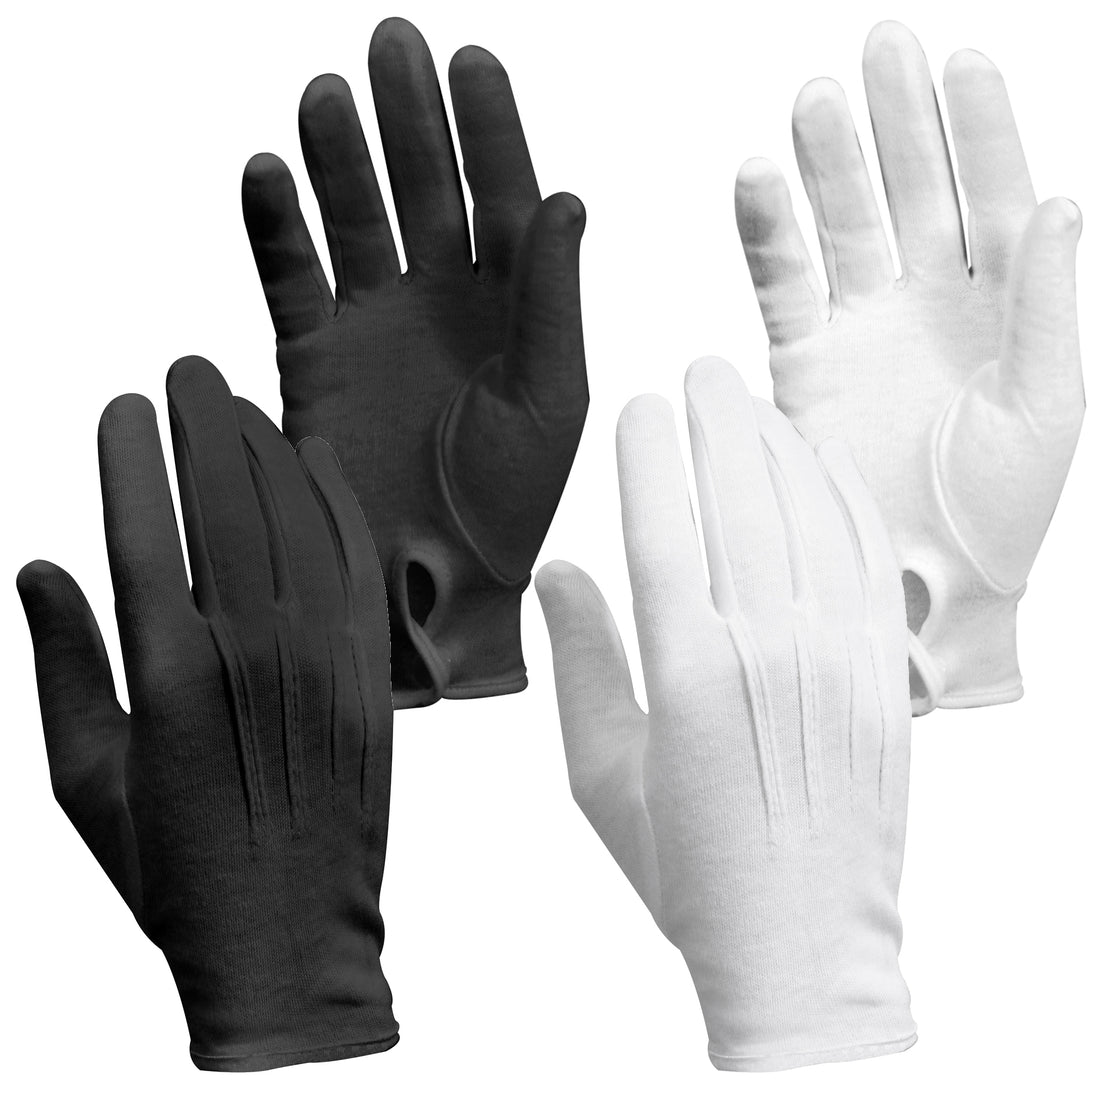 Rothco's Parade Gloves